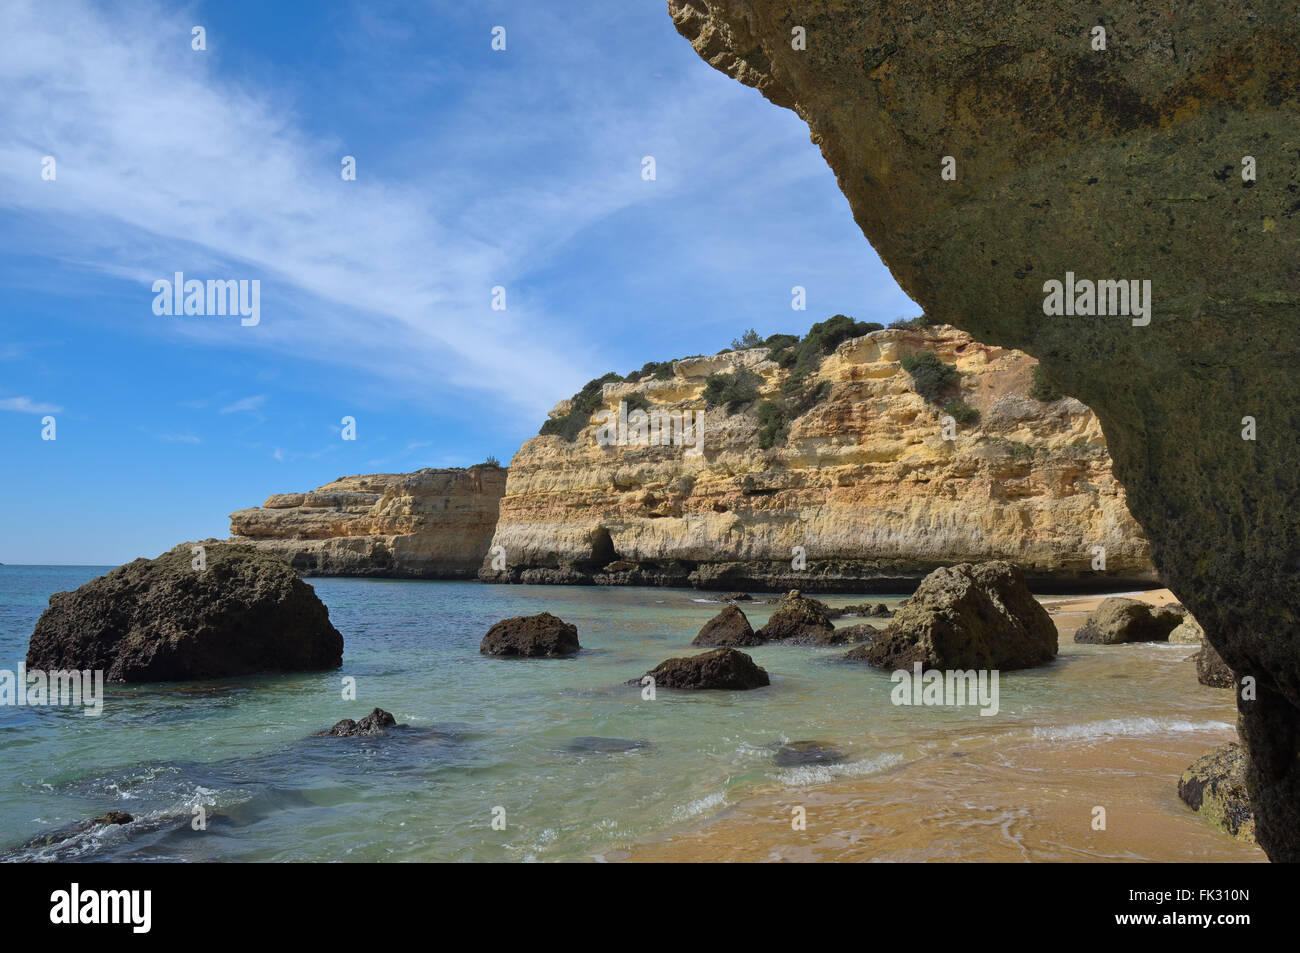 Scène de plage en plage Albandeira. Porches, Algarve, Portugal Banque D'Images